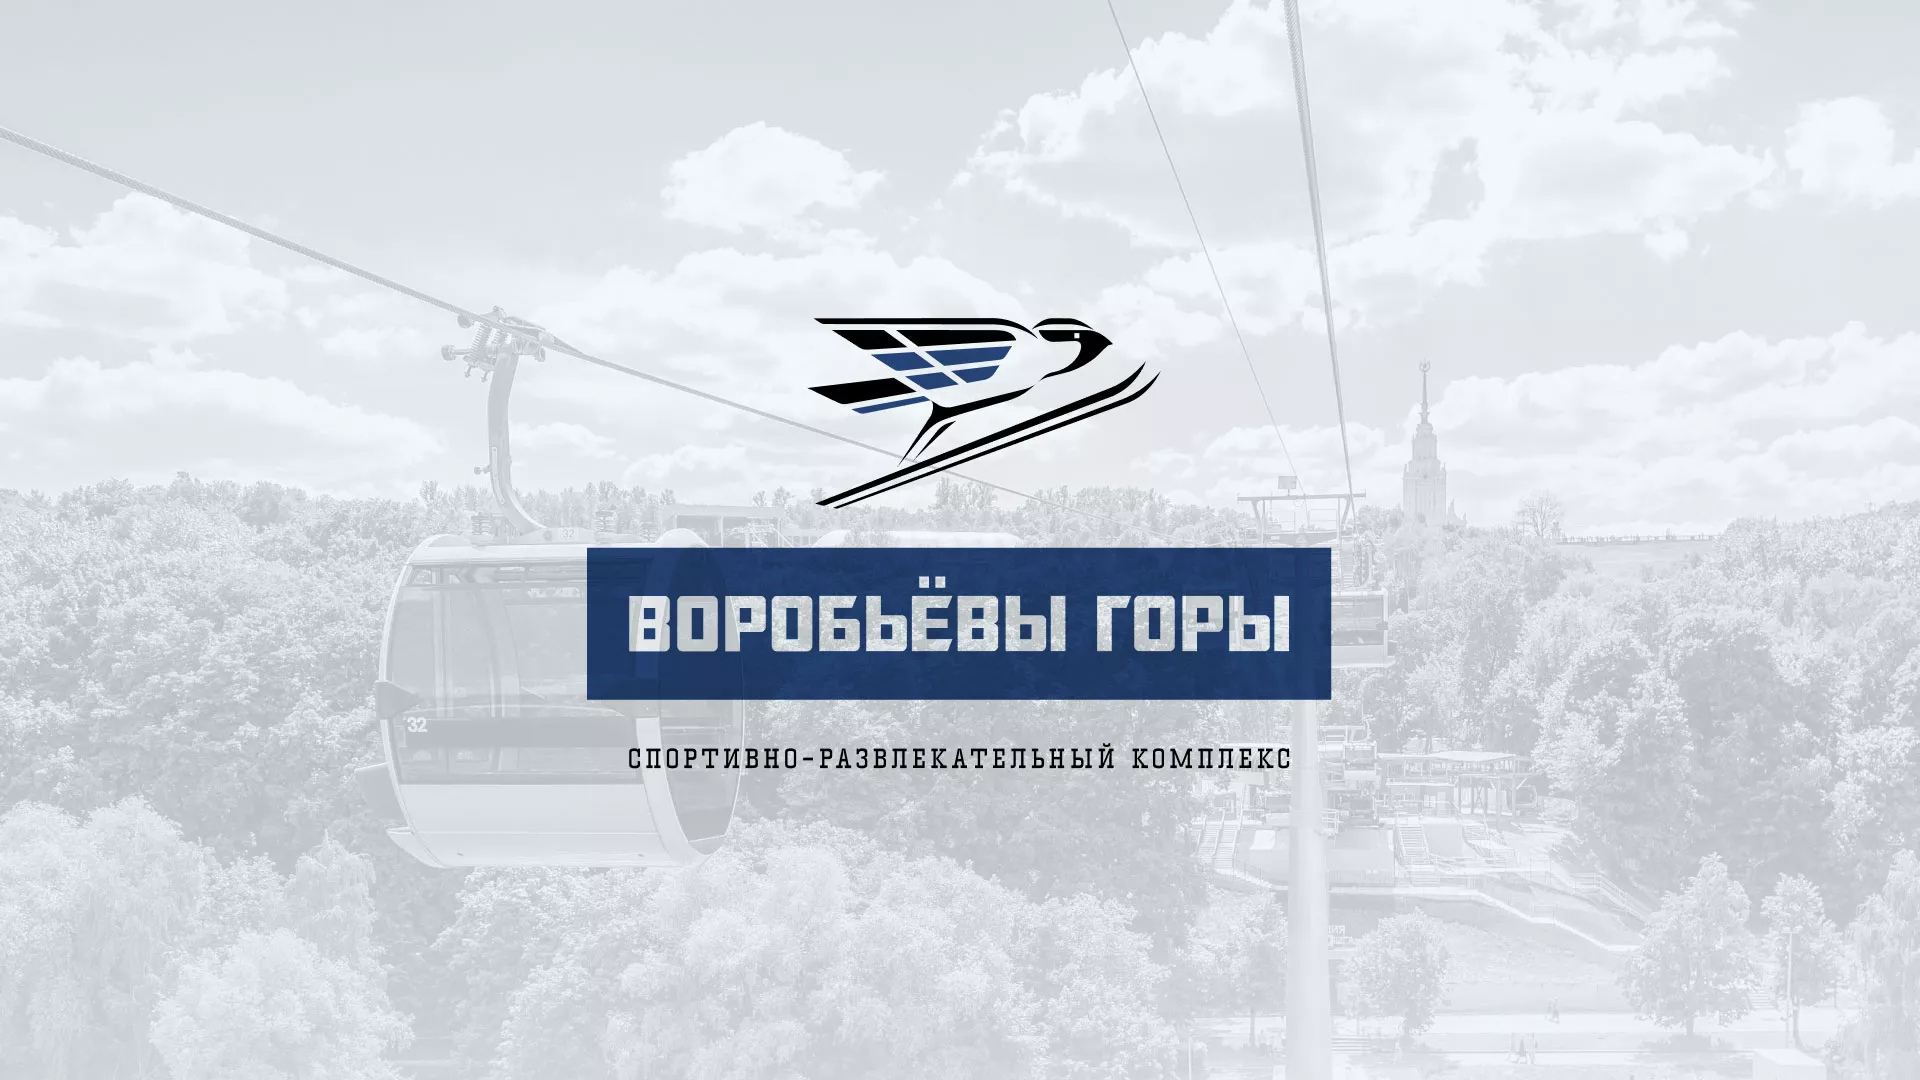 Разработка сайта в Малгобеке для спортивно-развлекательного комплекса «Воробьёвы горы»